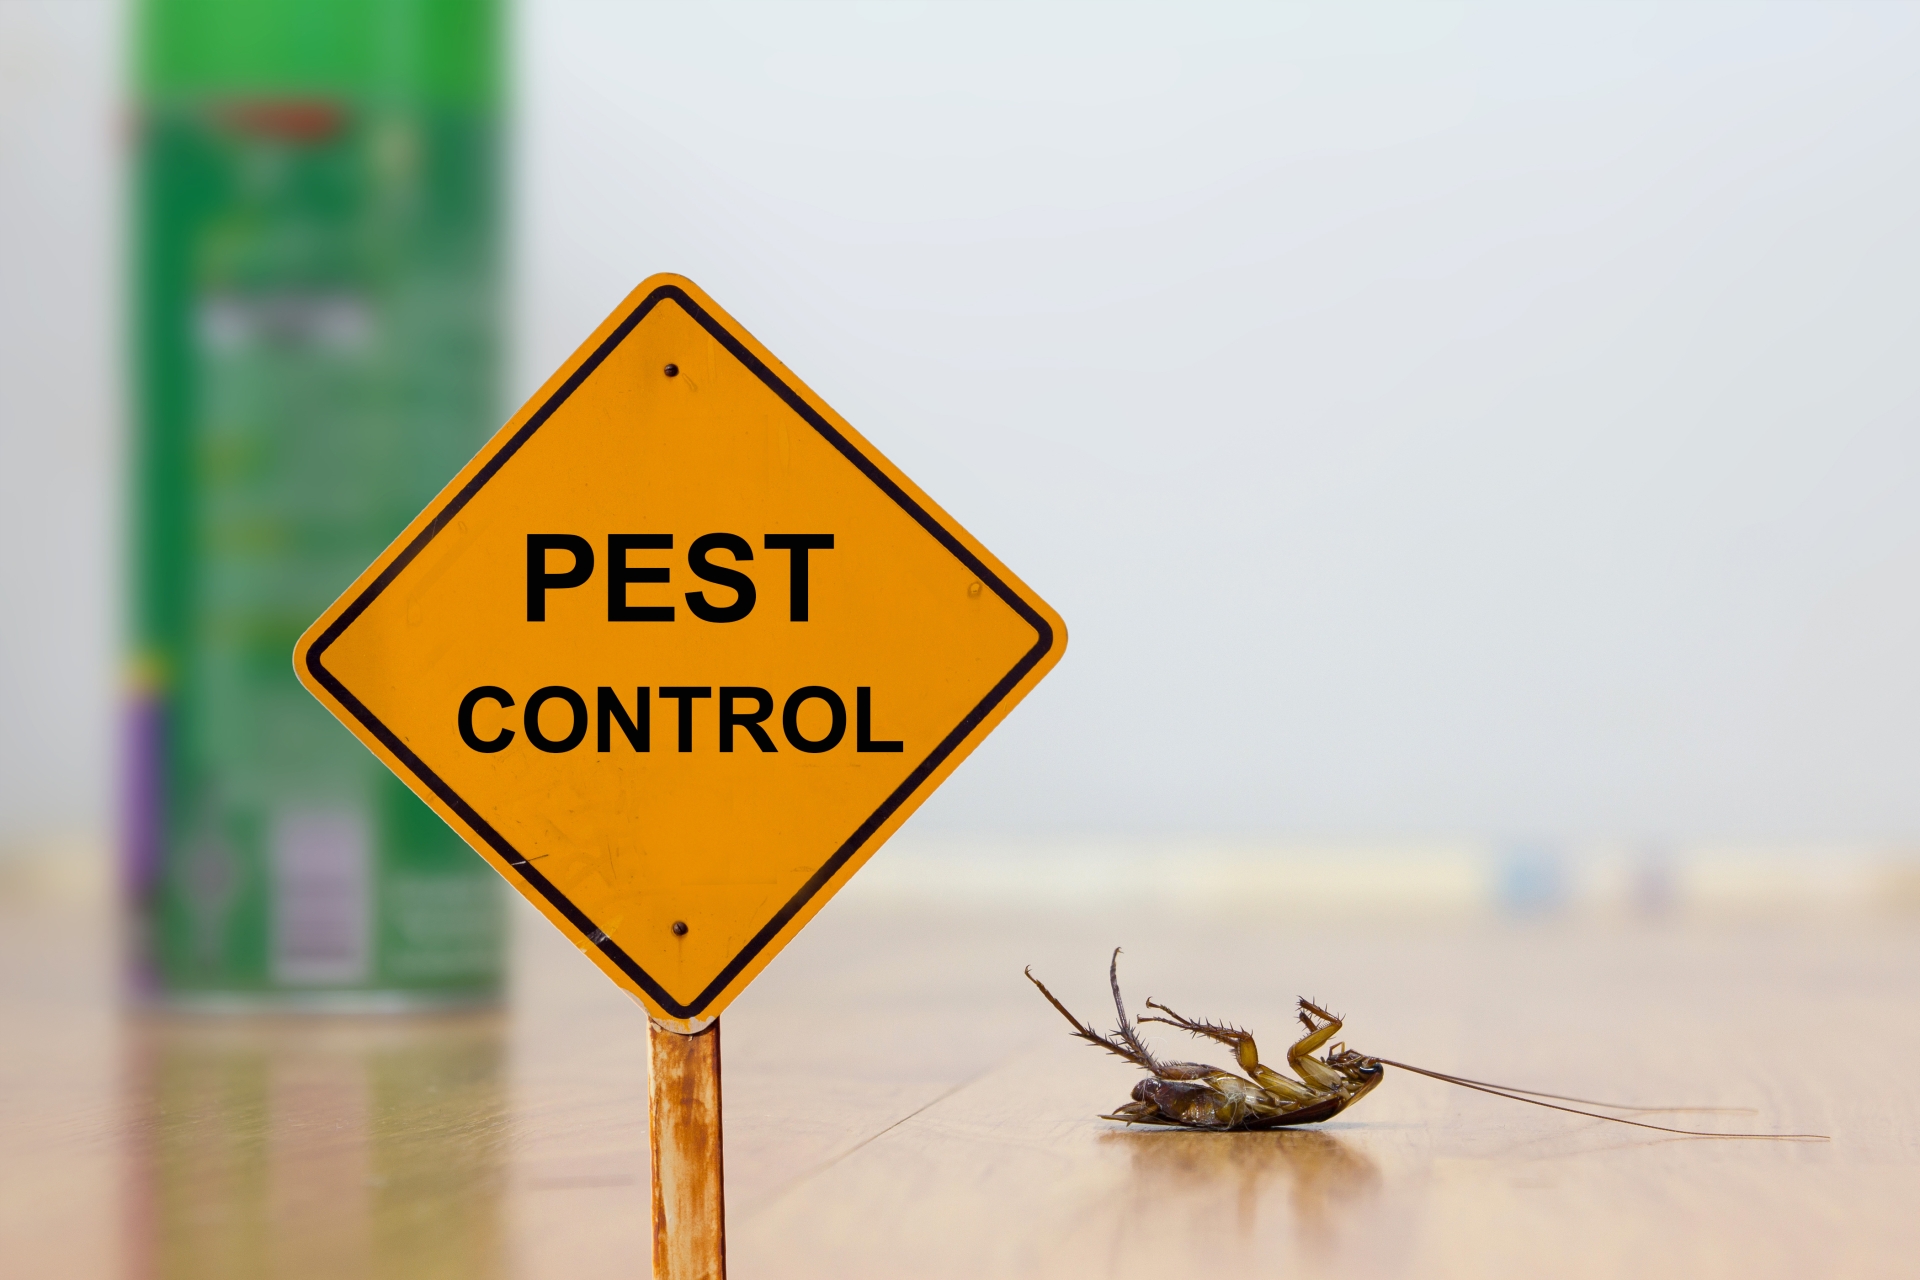 24 Hour Pest Control, Pest Control in Redbridge, IG4. Call Now 020 8166 9746